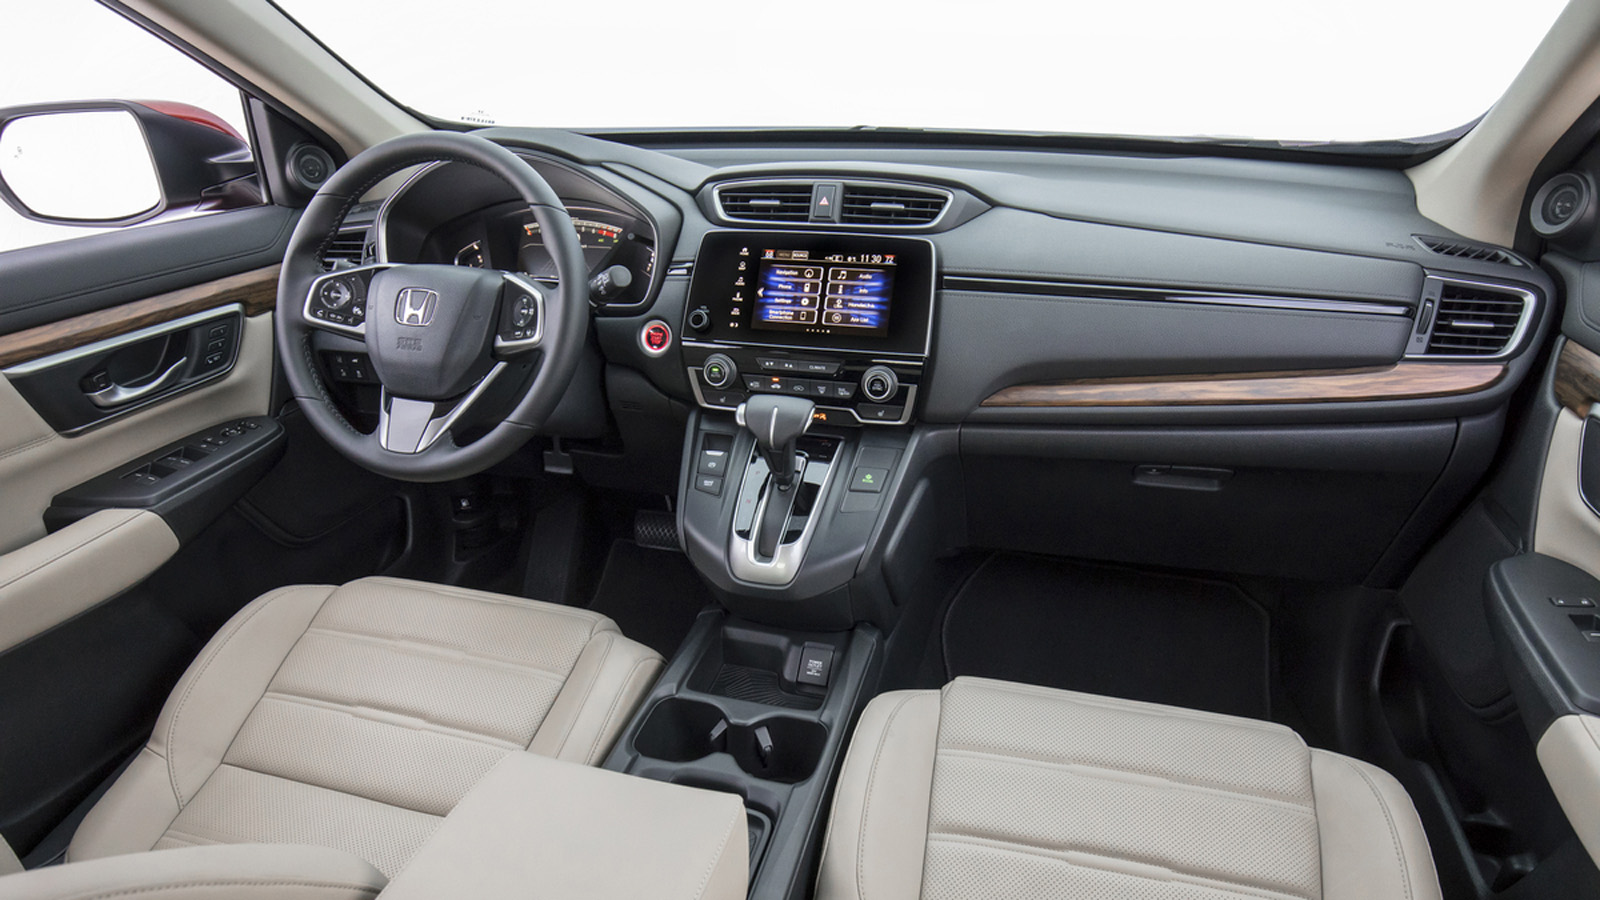        Có 1 tỷ nên mua xe SUV gì? - Honda CR-V 1.5L 2018 là lựa chọn đáng cân nhắc